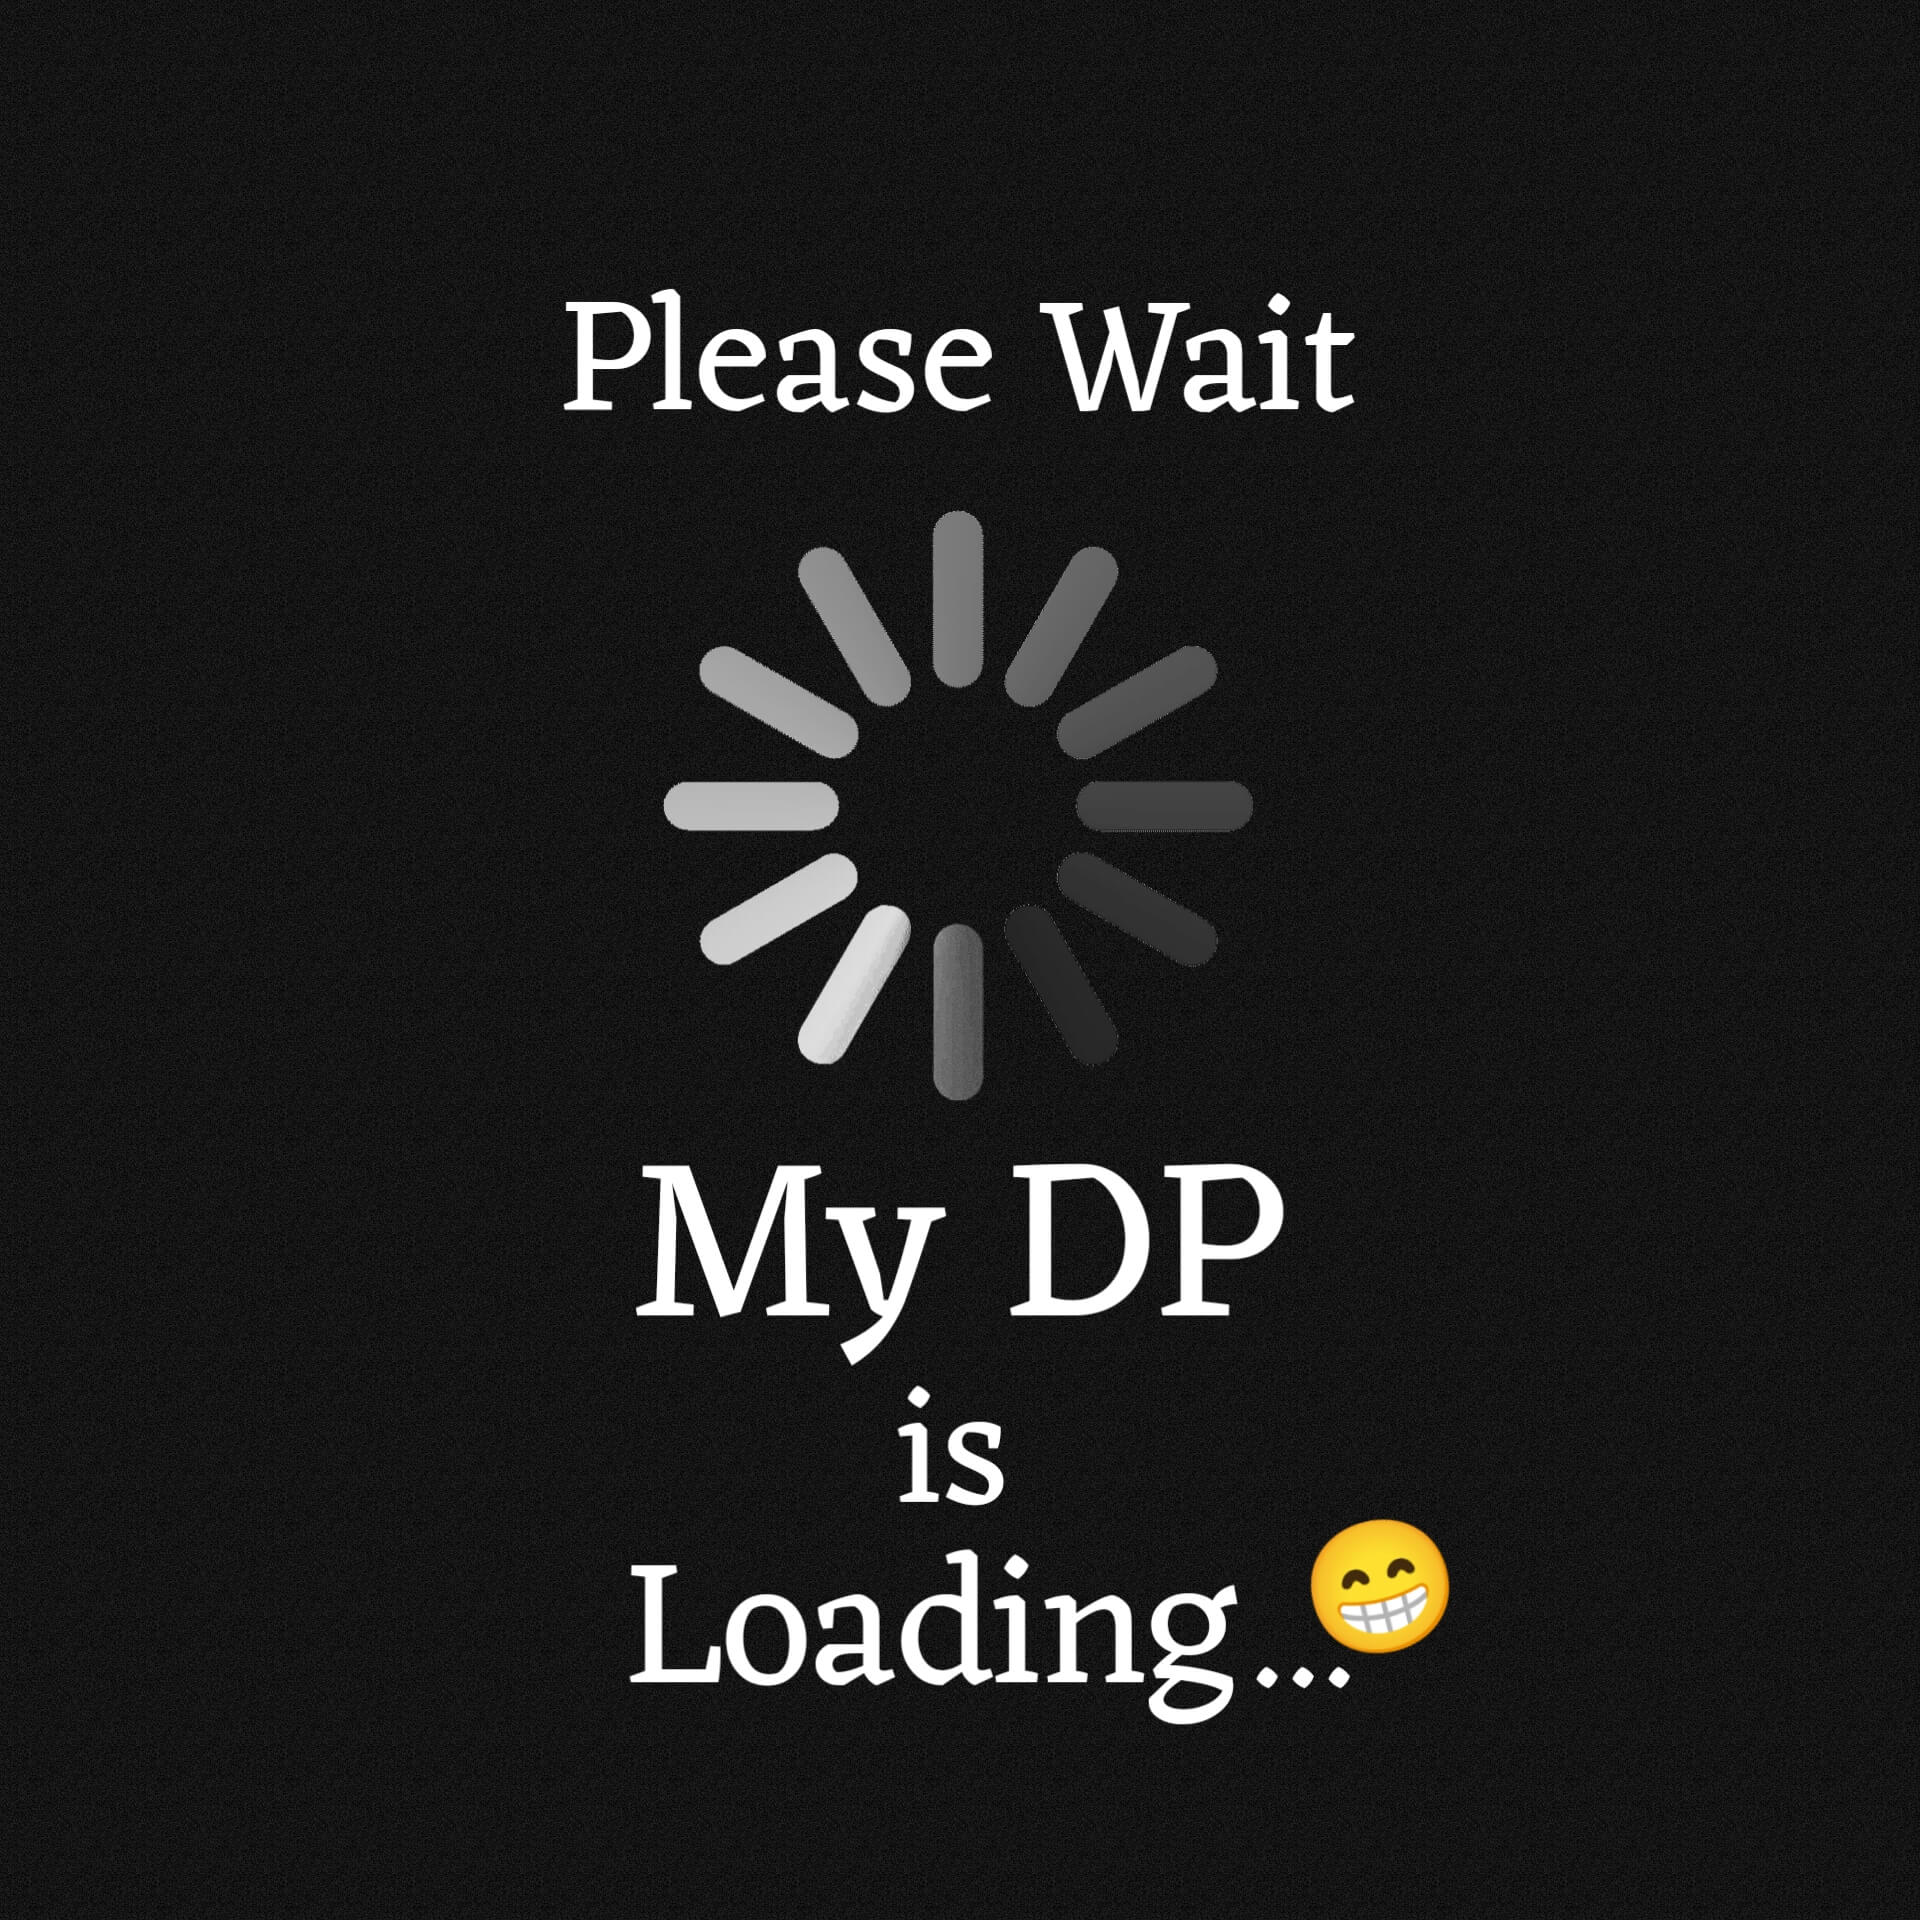 Please Wait My DP is Loading